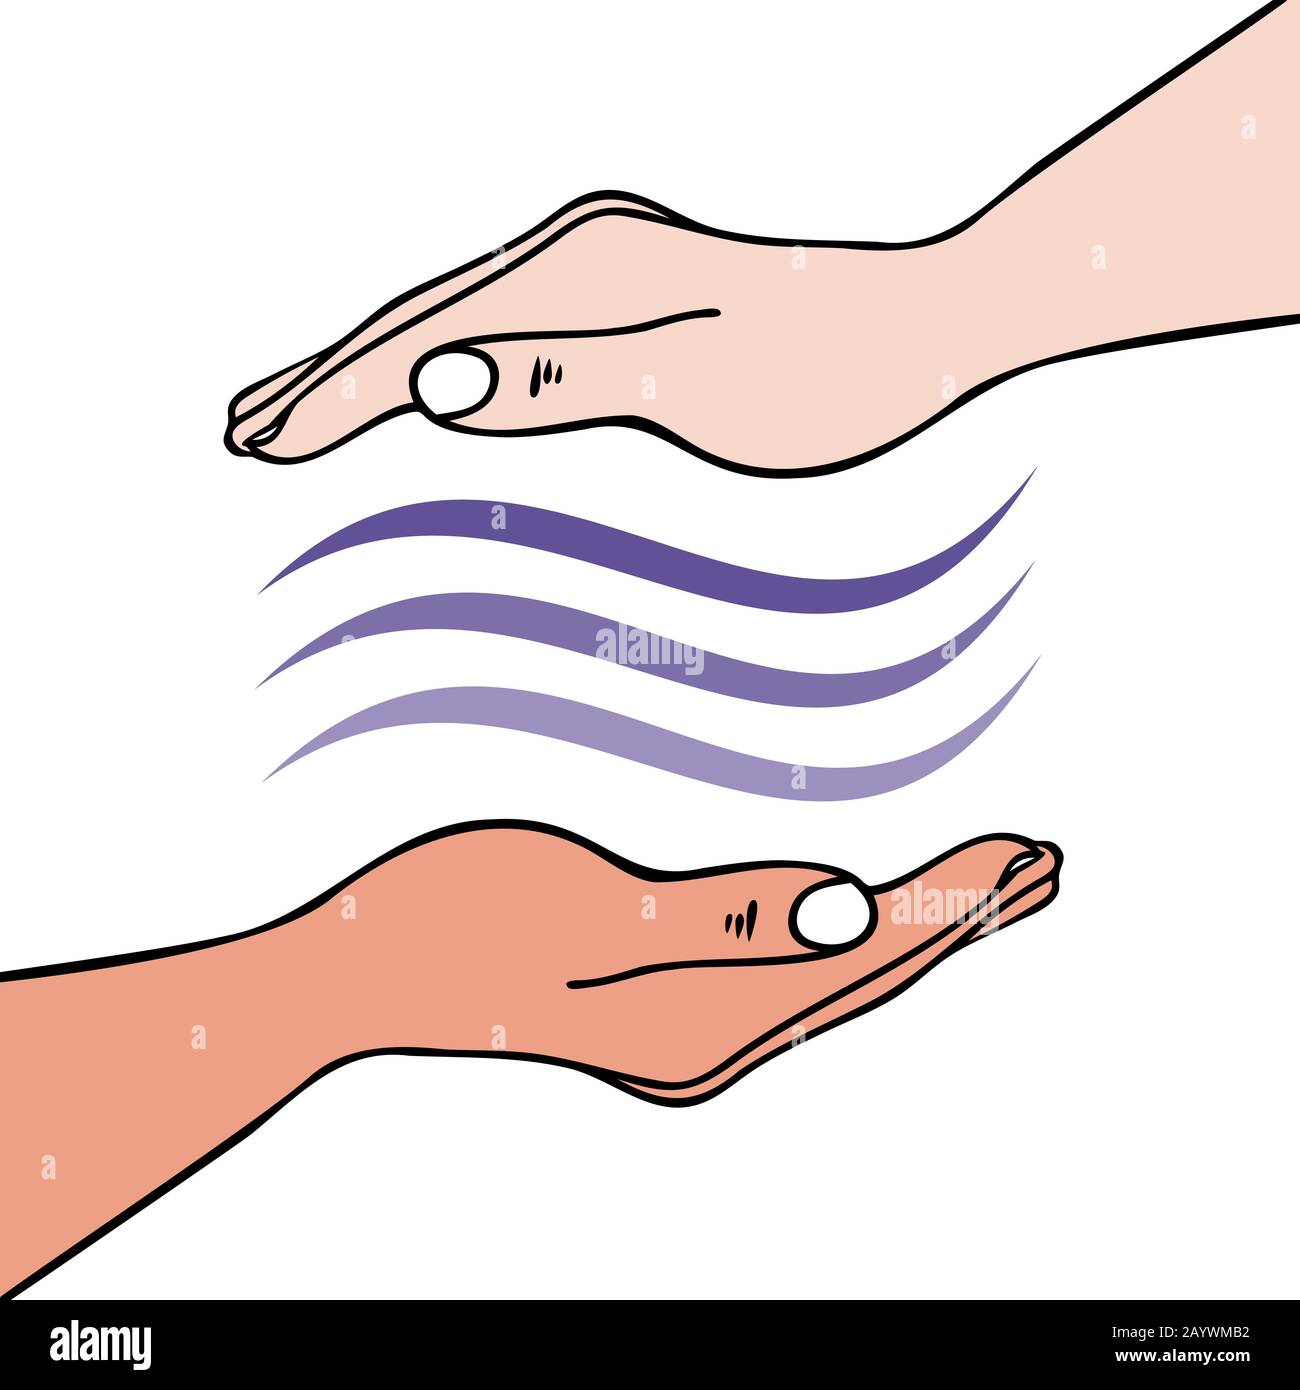 Guarigione mani-su che mostra mano che invia onde di energia univerali per la guarigione emotiva o fisica - per Reiki, medicina Alternativa Illustrazione Vettoriale